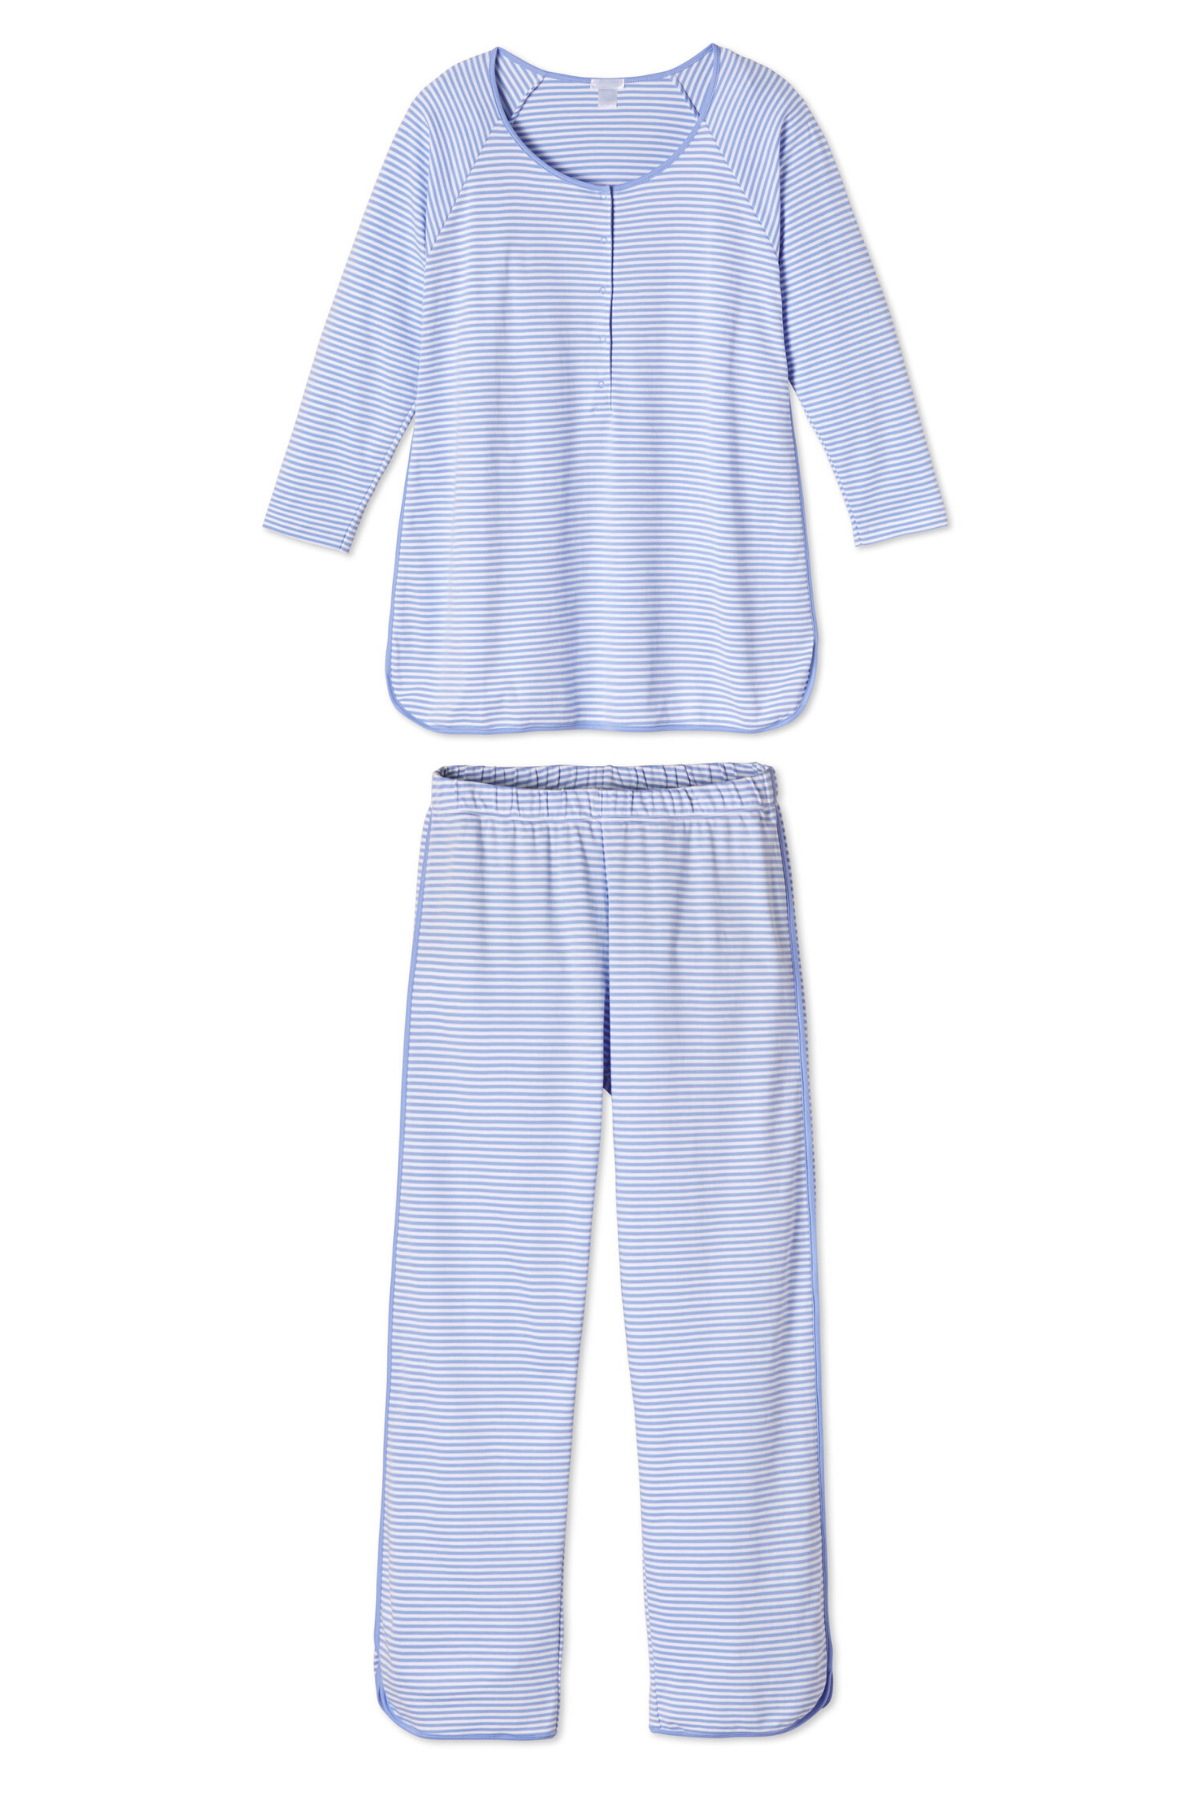 Best maternity pyjamas 2023: 11 dreamy nursing nightwear sets for